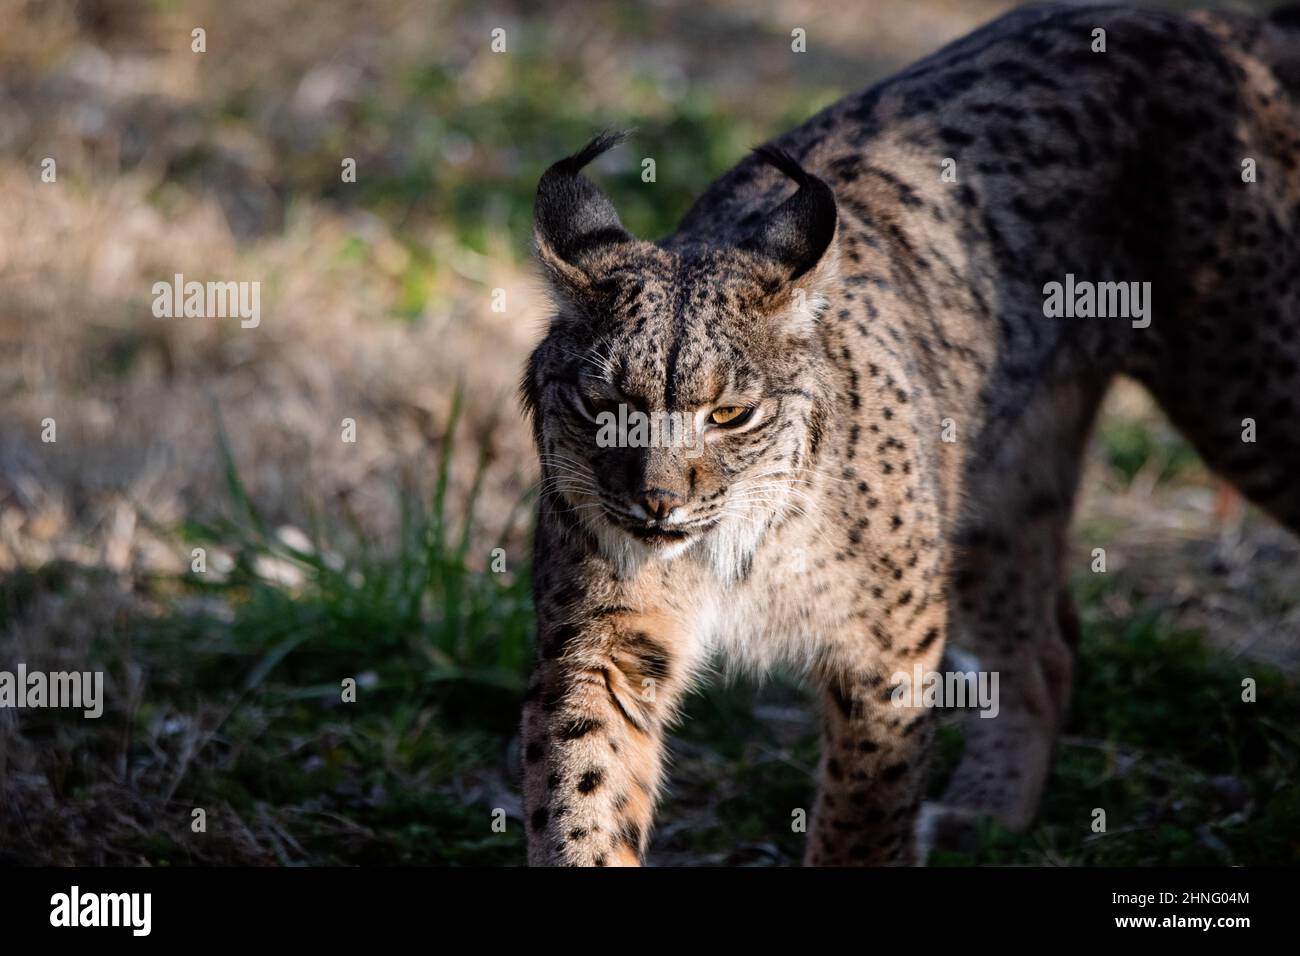 Gros plan sur un lynx ibérique (Lynx pardinus), espèce sauvage de chat originaire de la péninsule ibérique Banque D'Images